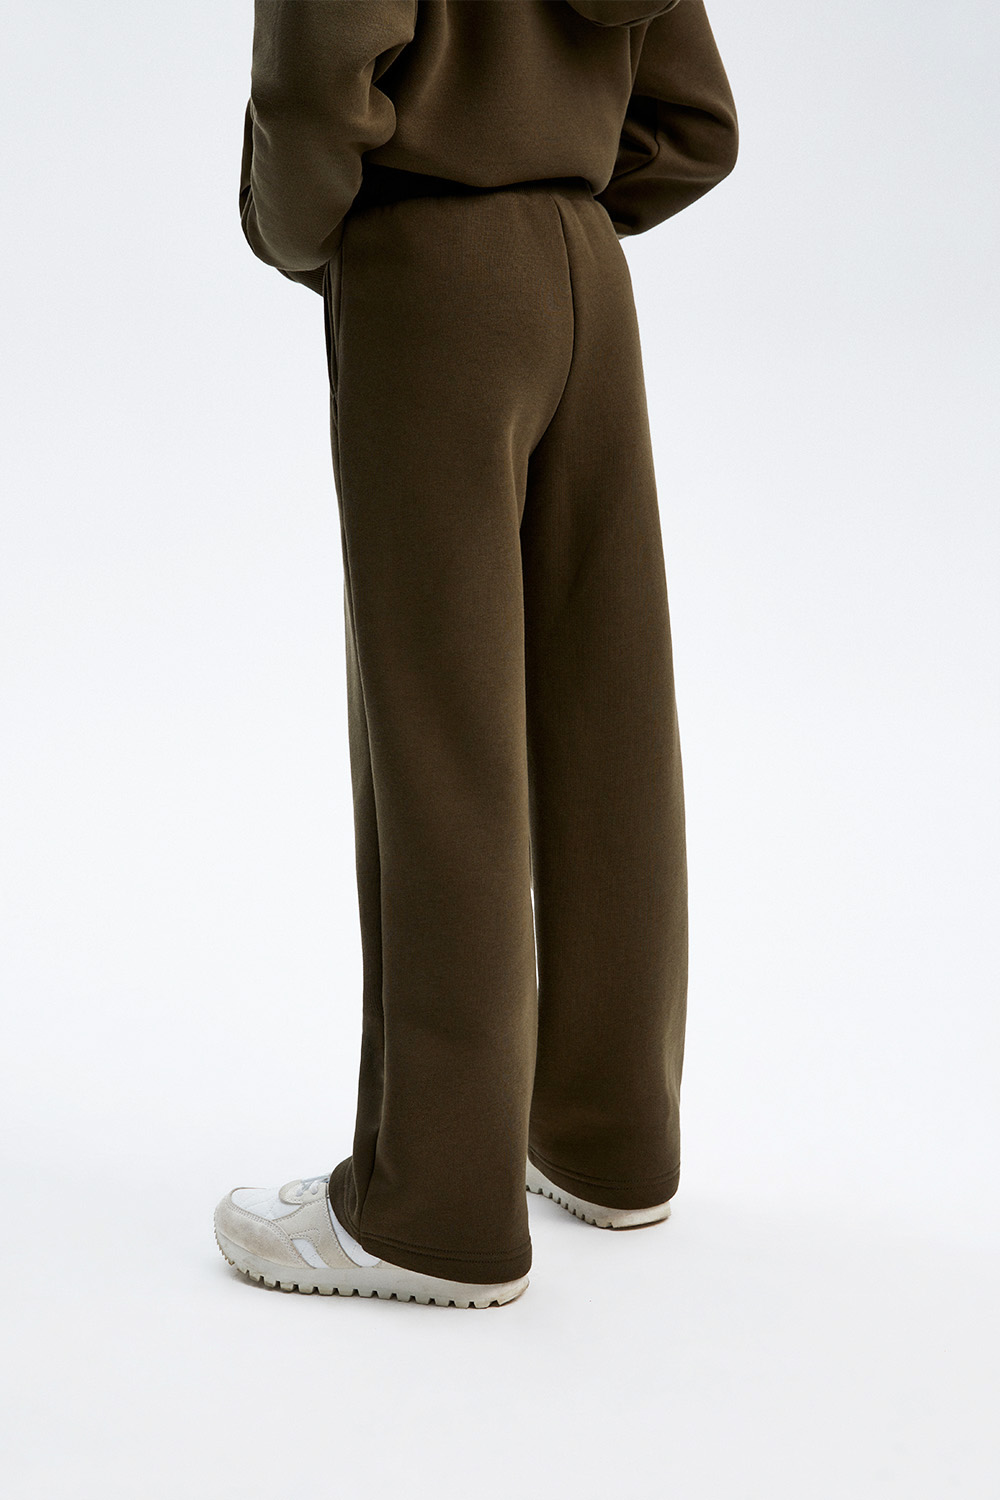 Трикотажные брюки с начесом (SSLWG-328-26426-705) Silver spoon